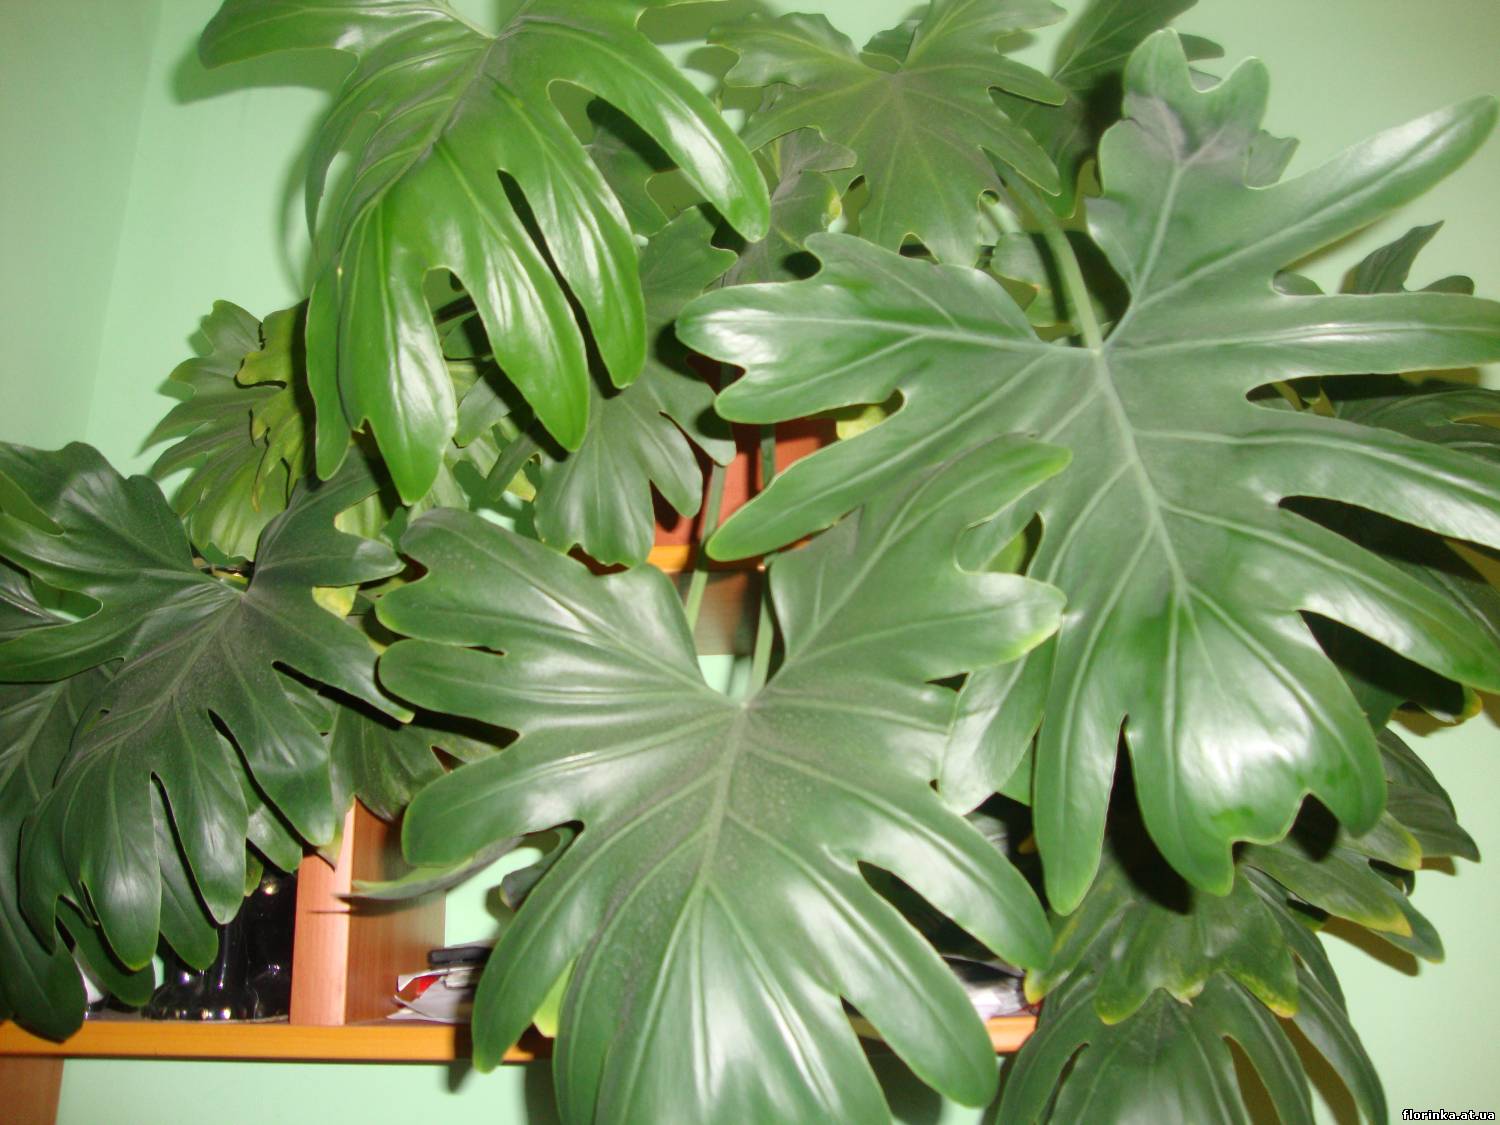 Комнатные растения большие листья фото с названиями. Филодендрон дваждыперистый. Филодендрон Селло. Филодендрон Джангл буги. Филодендрон дваждыперистонадрезный.